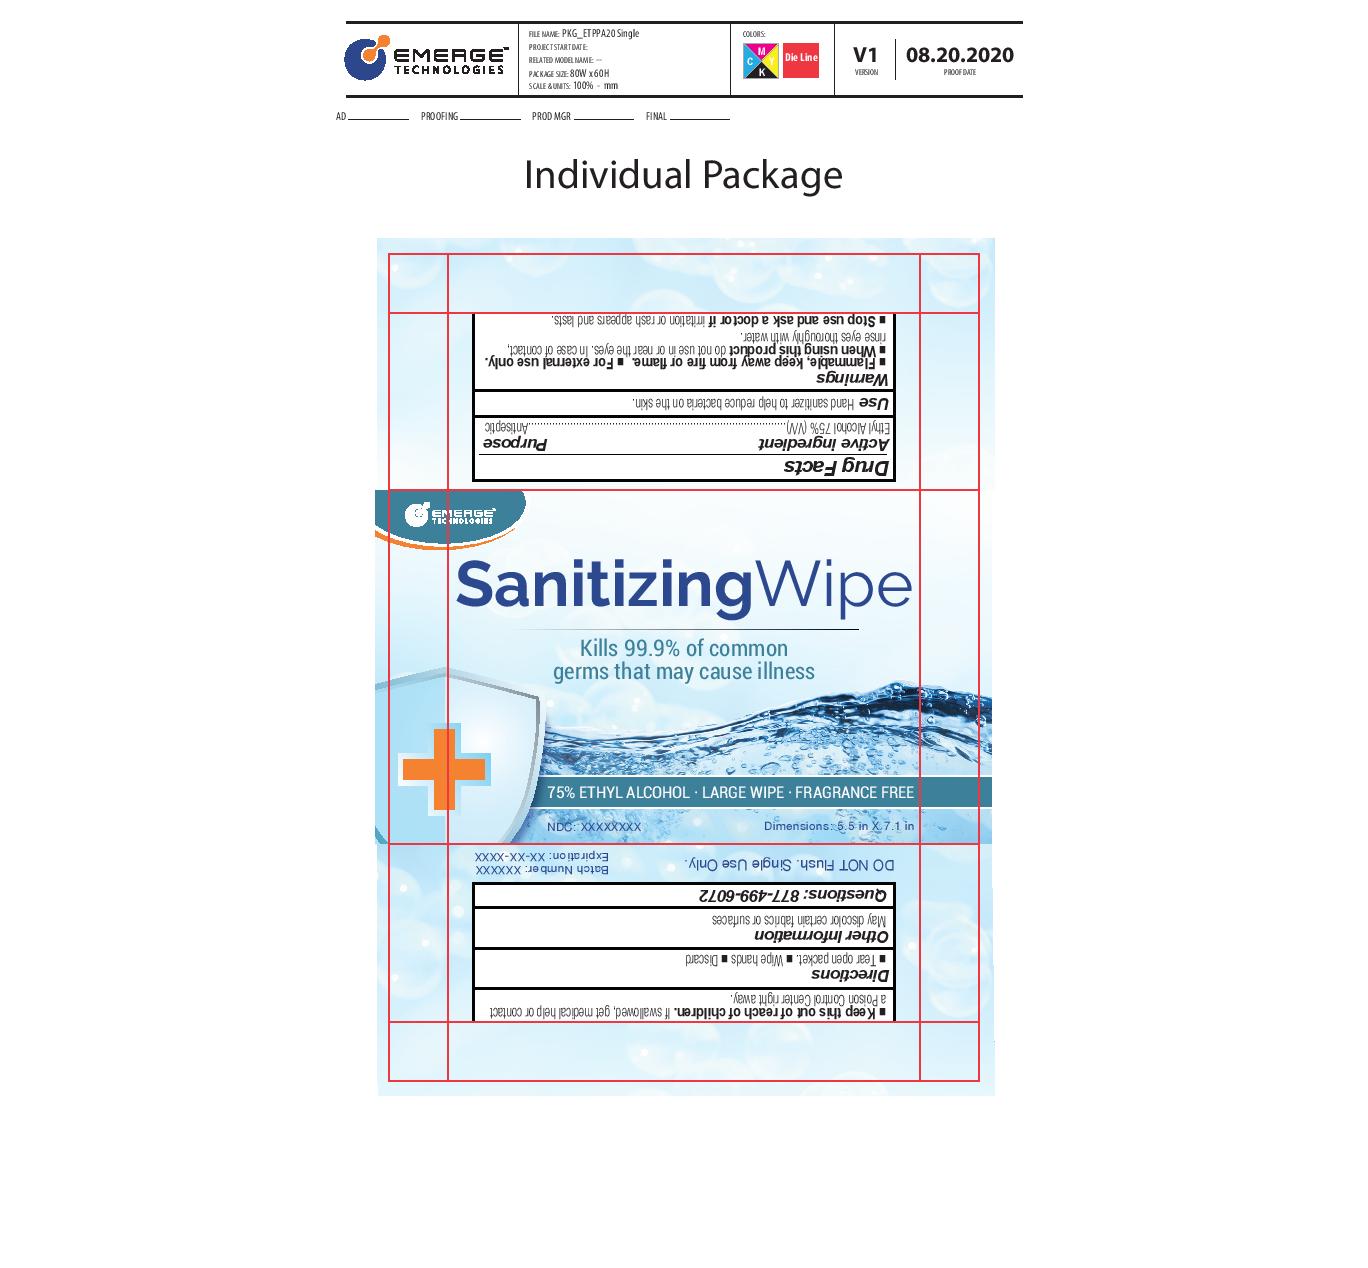 Sanitizing Wipe